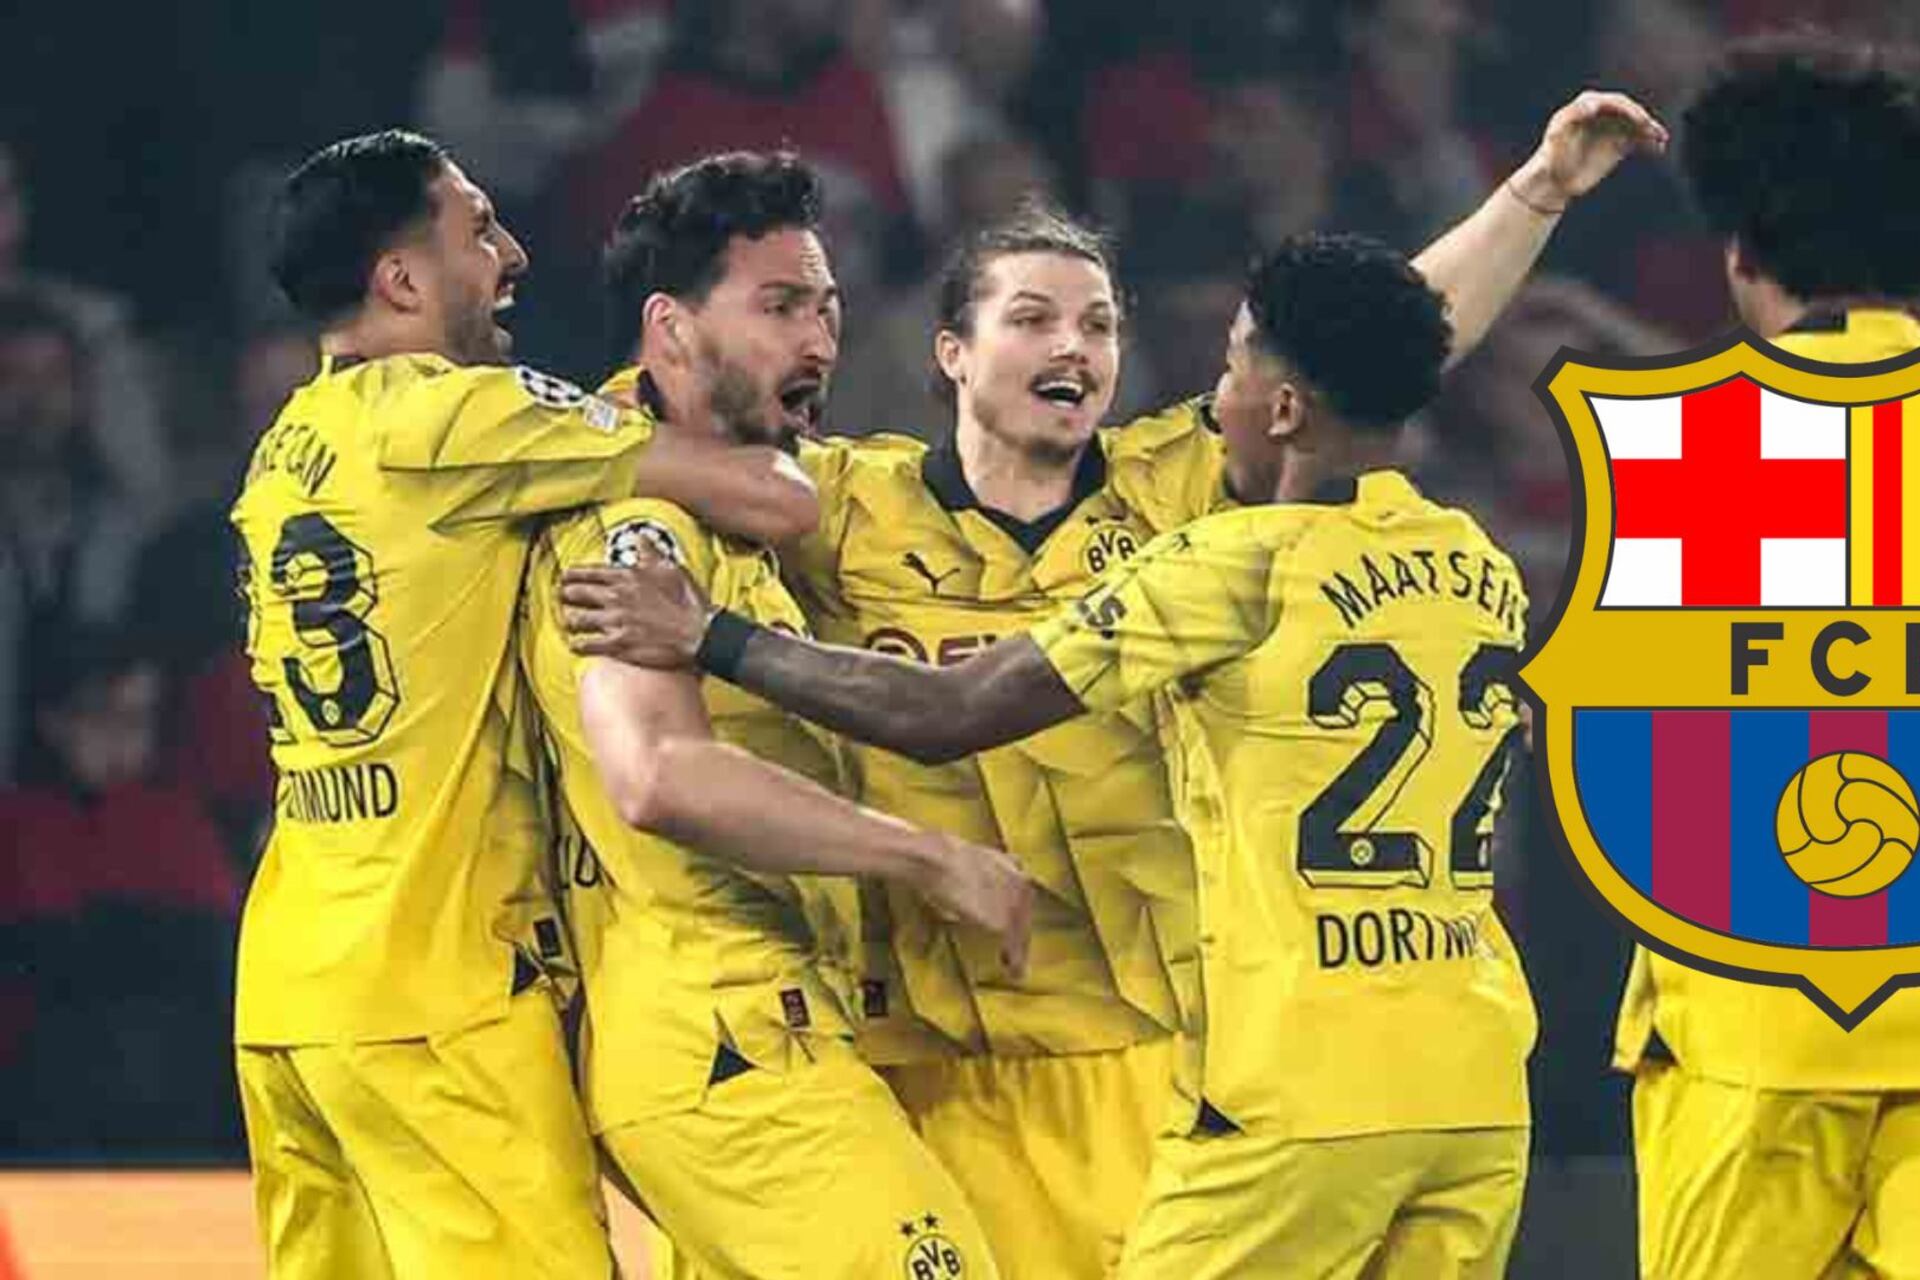 En Barça aplauden, la creativa burla del Dortmund contra el PSG como venganza